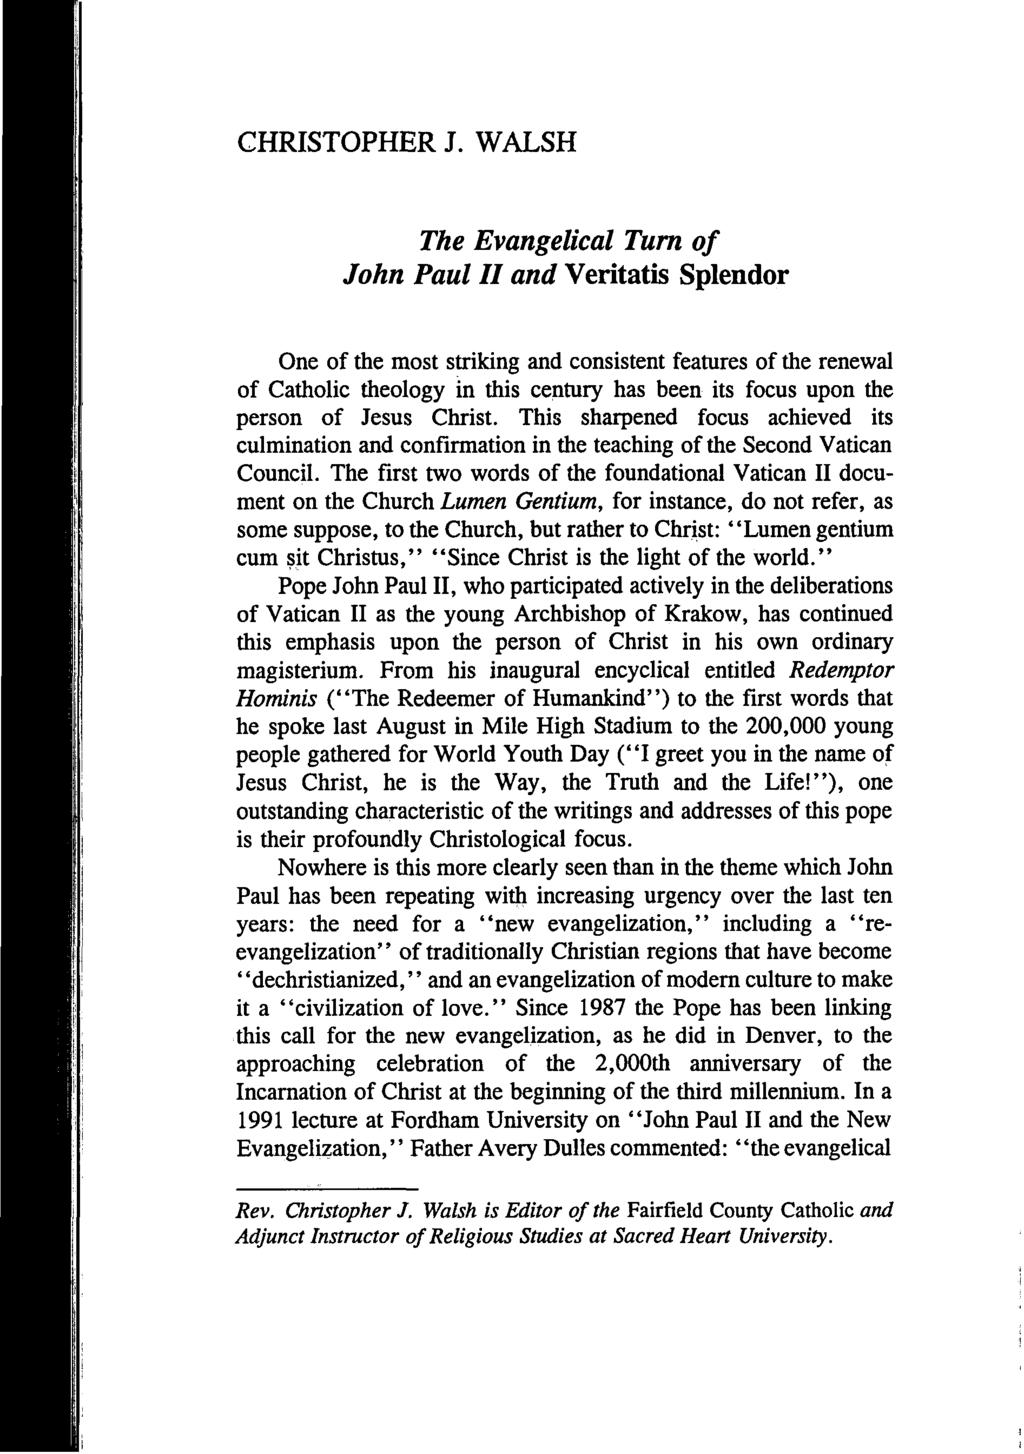 Walsh: The Evangelical Turn of John Paul II and Veritatis Splendor CHRISTOPHER J.